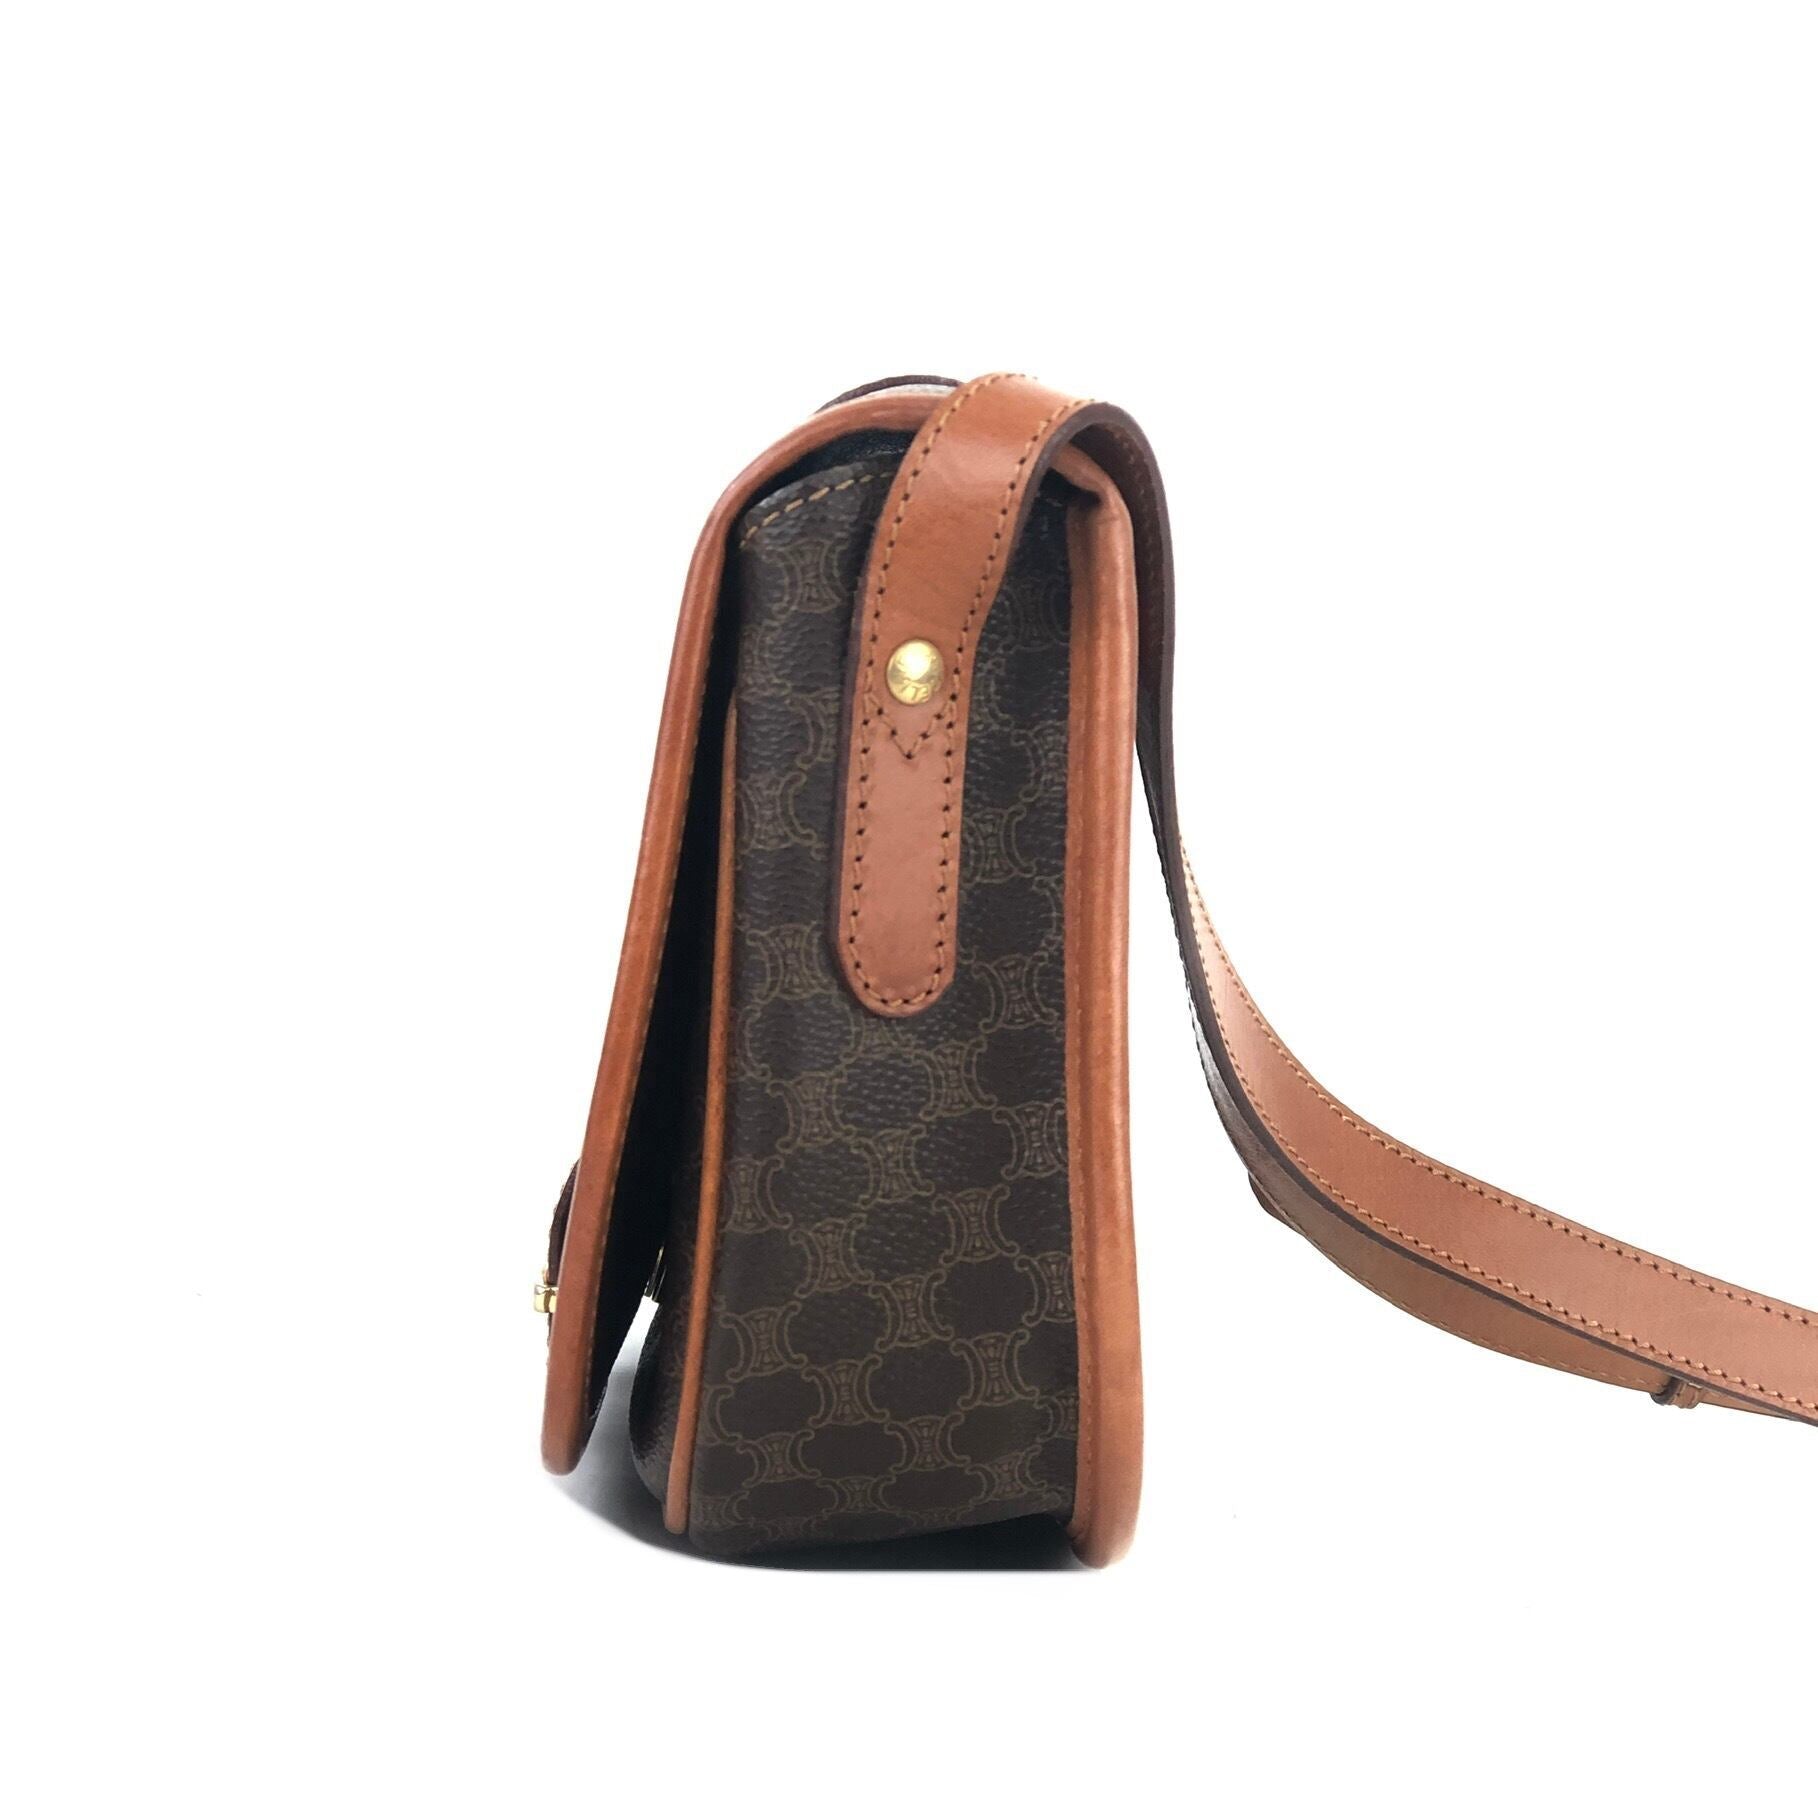 Hermès - Orange Leather Sac Trim II 35 Hobo Shoulder Bag - Catawiki